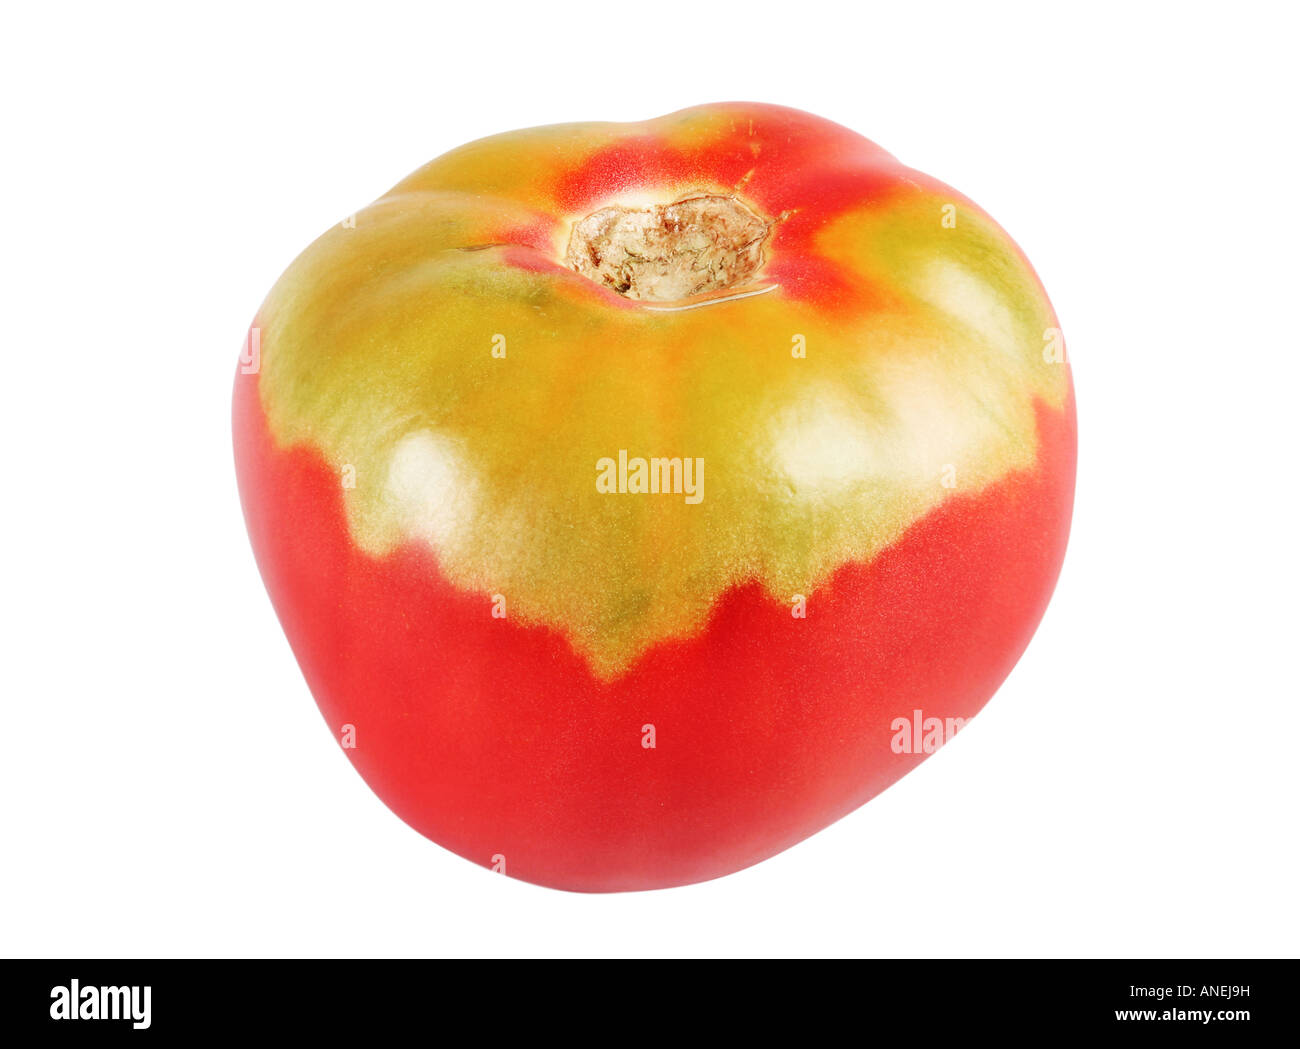 Des fruits de tomate rouge isolé sur fond blanc Banque D'Images